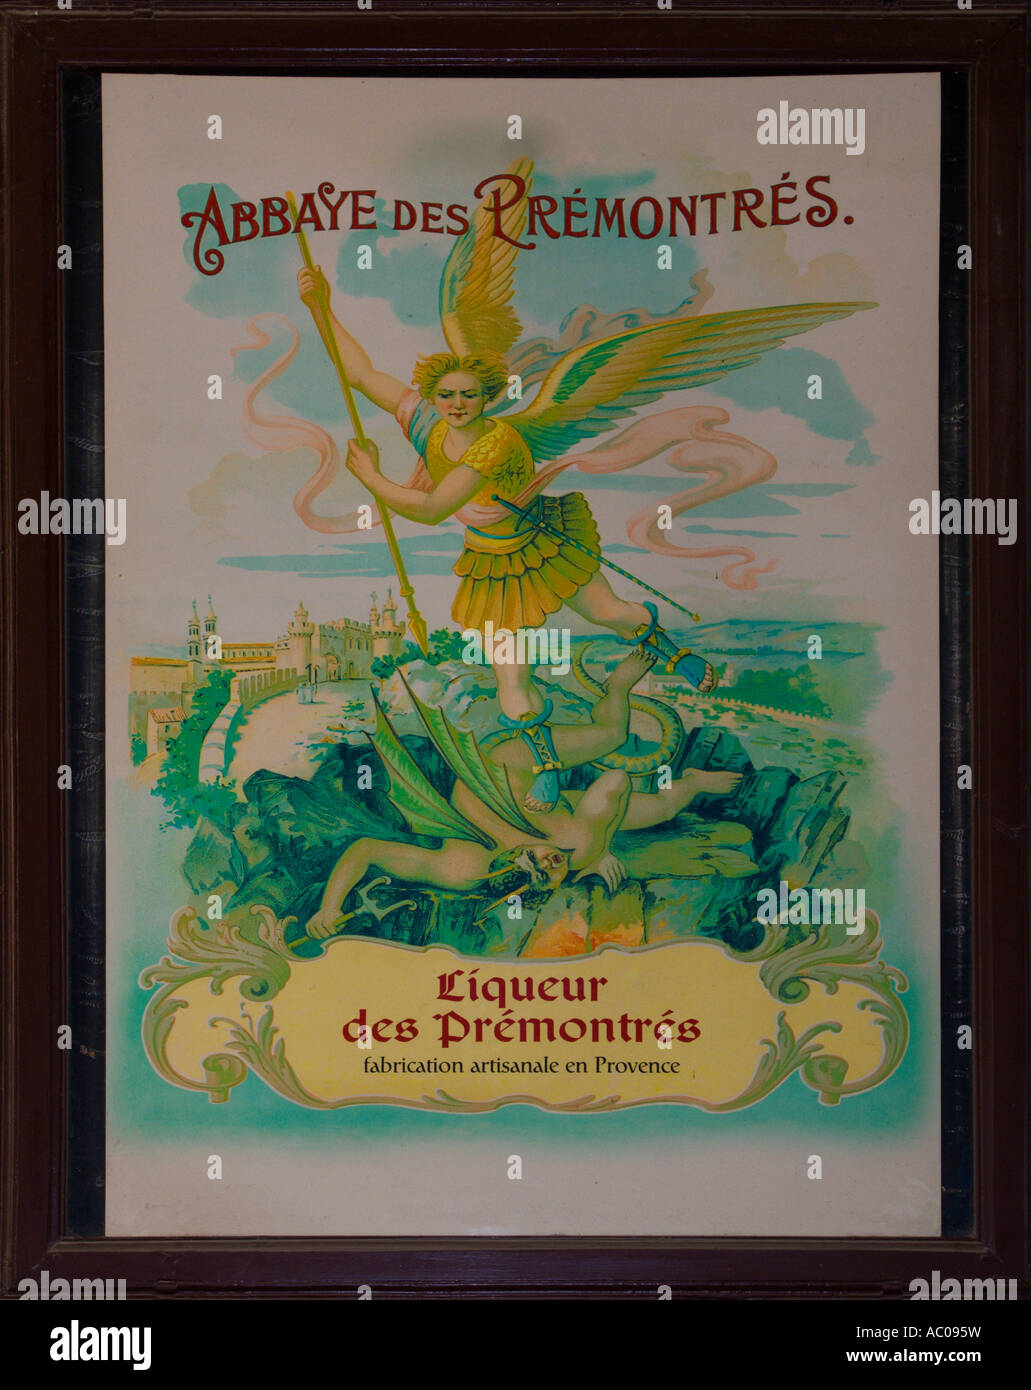 Period poster for Abbaye des Prémontrés Liqueur des Prémontrés Frigolet drink made by Premonstratensian monks Stock Photo